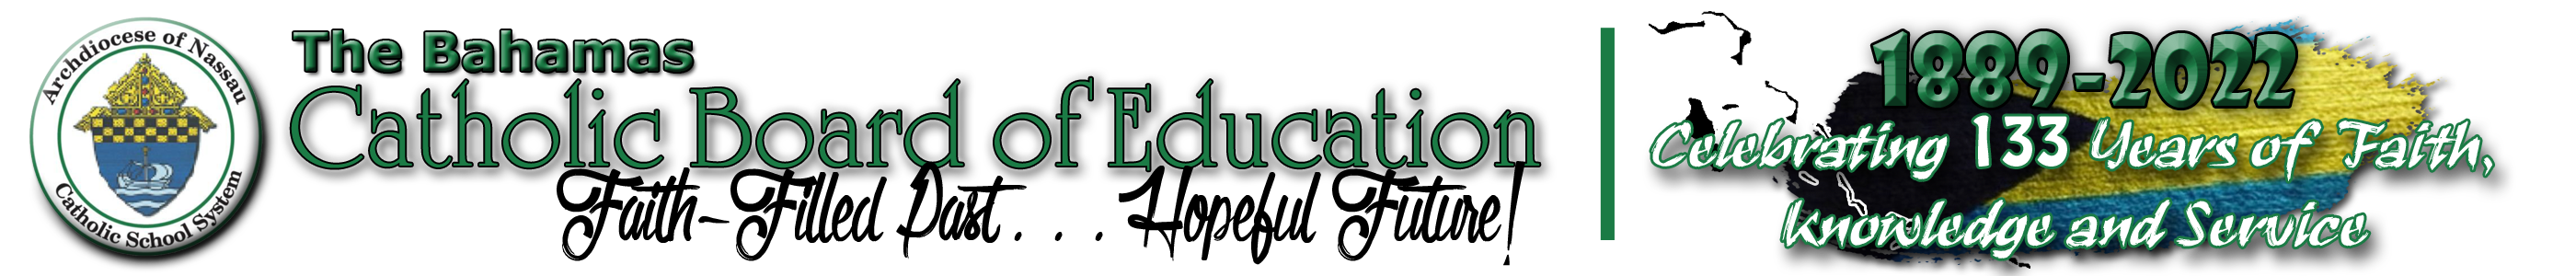 Catholic Board of Education Logo